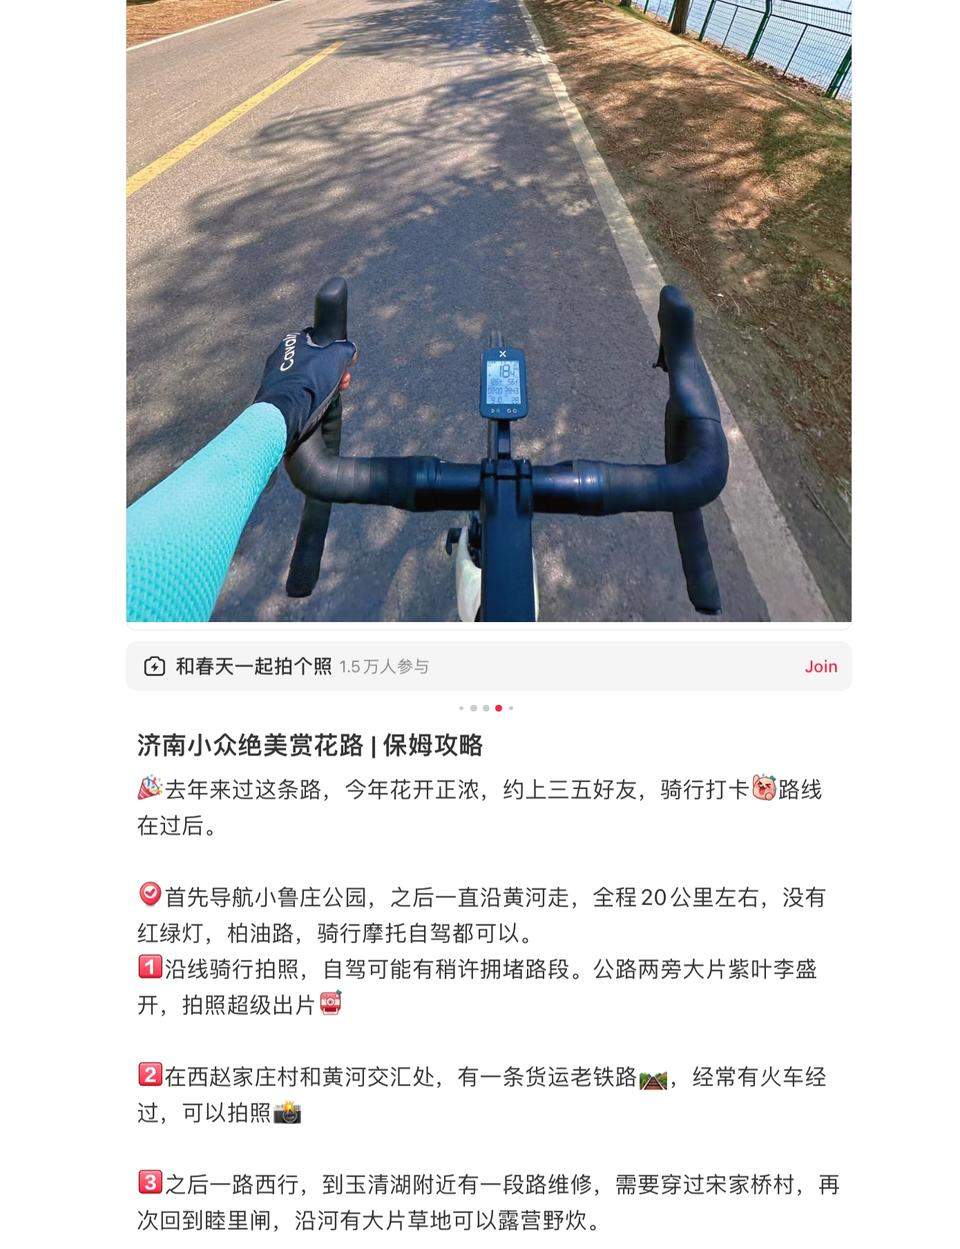 周末踏春轻旅行，公路自行车成年轻人新宠！记者探访济南骑行路线